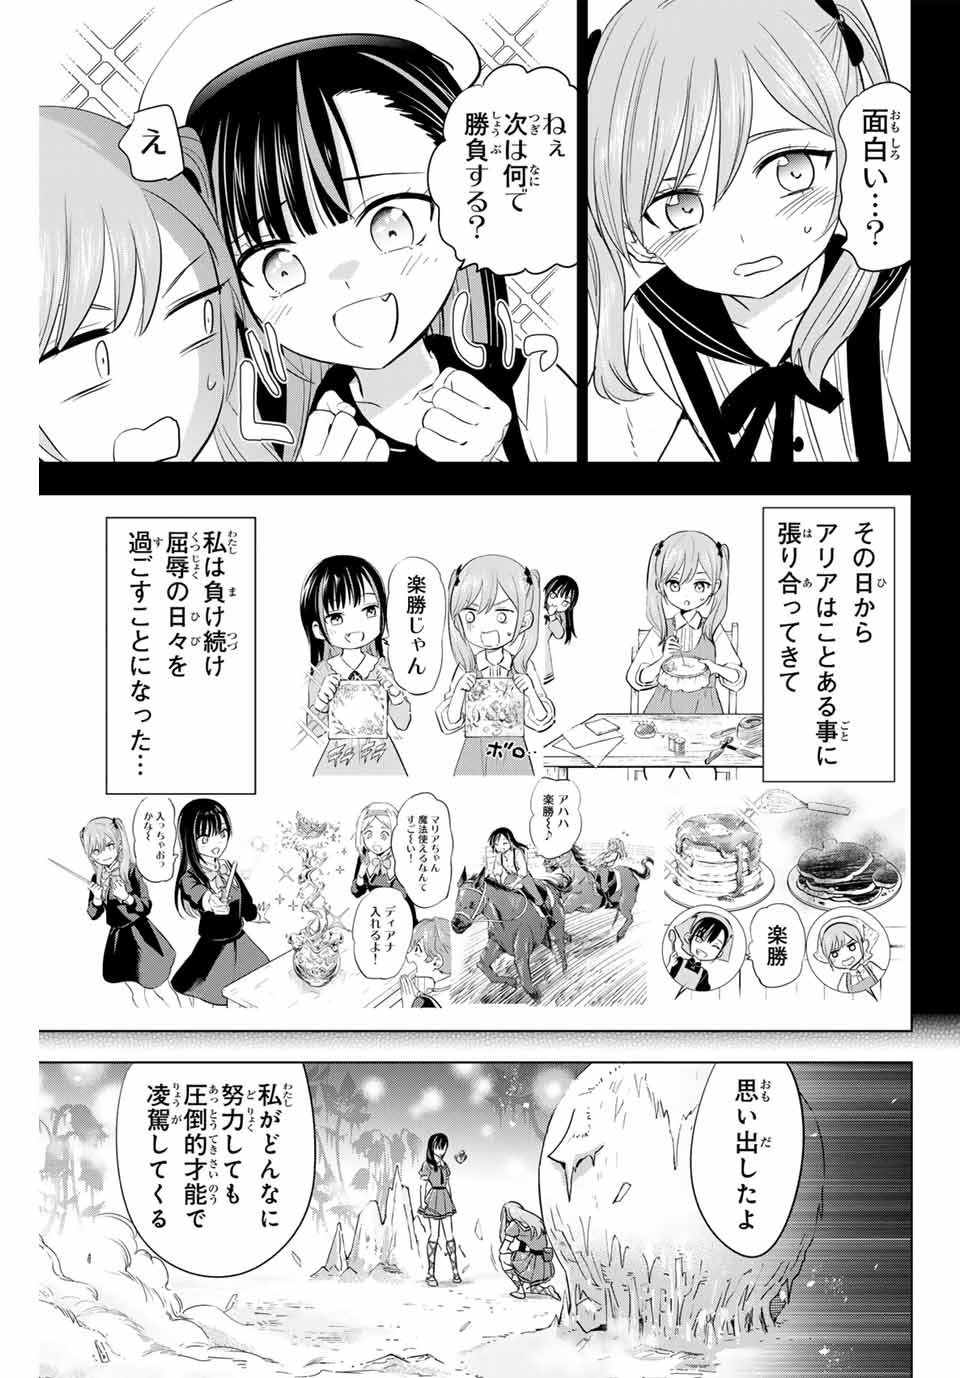 Kuroneko to Majo no Kyoushitsu - Chapter 54 - Page 19